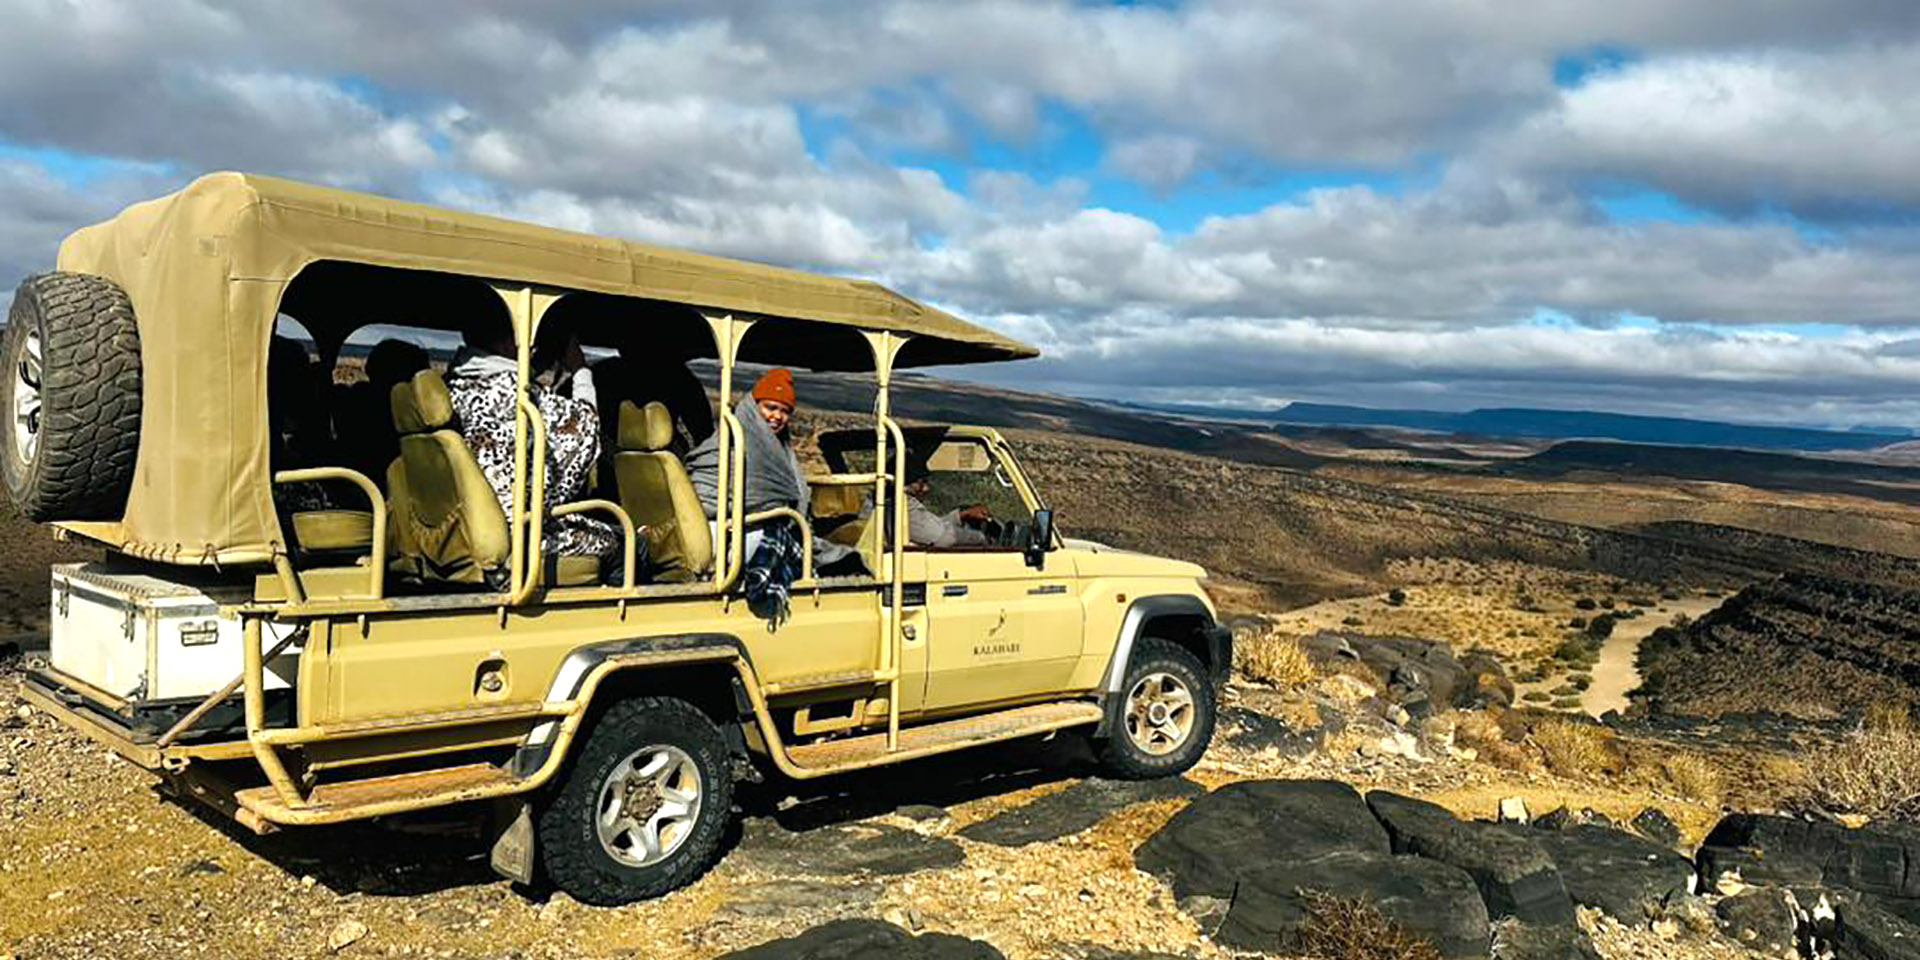 Safari vehicle at canyon rim, Namibia